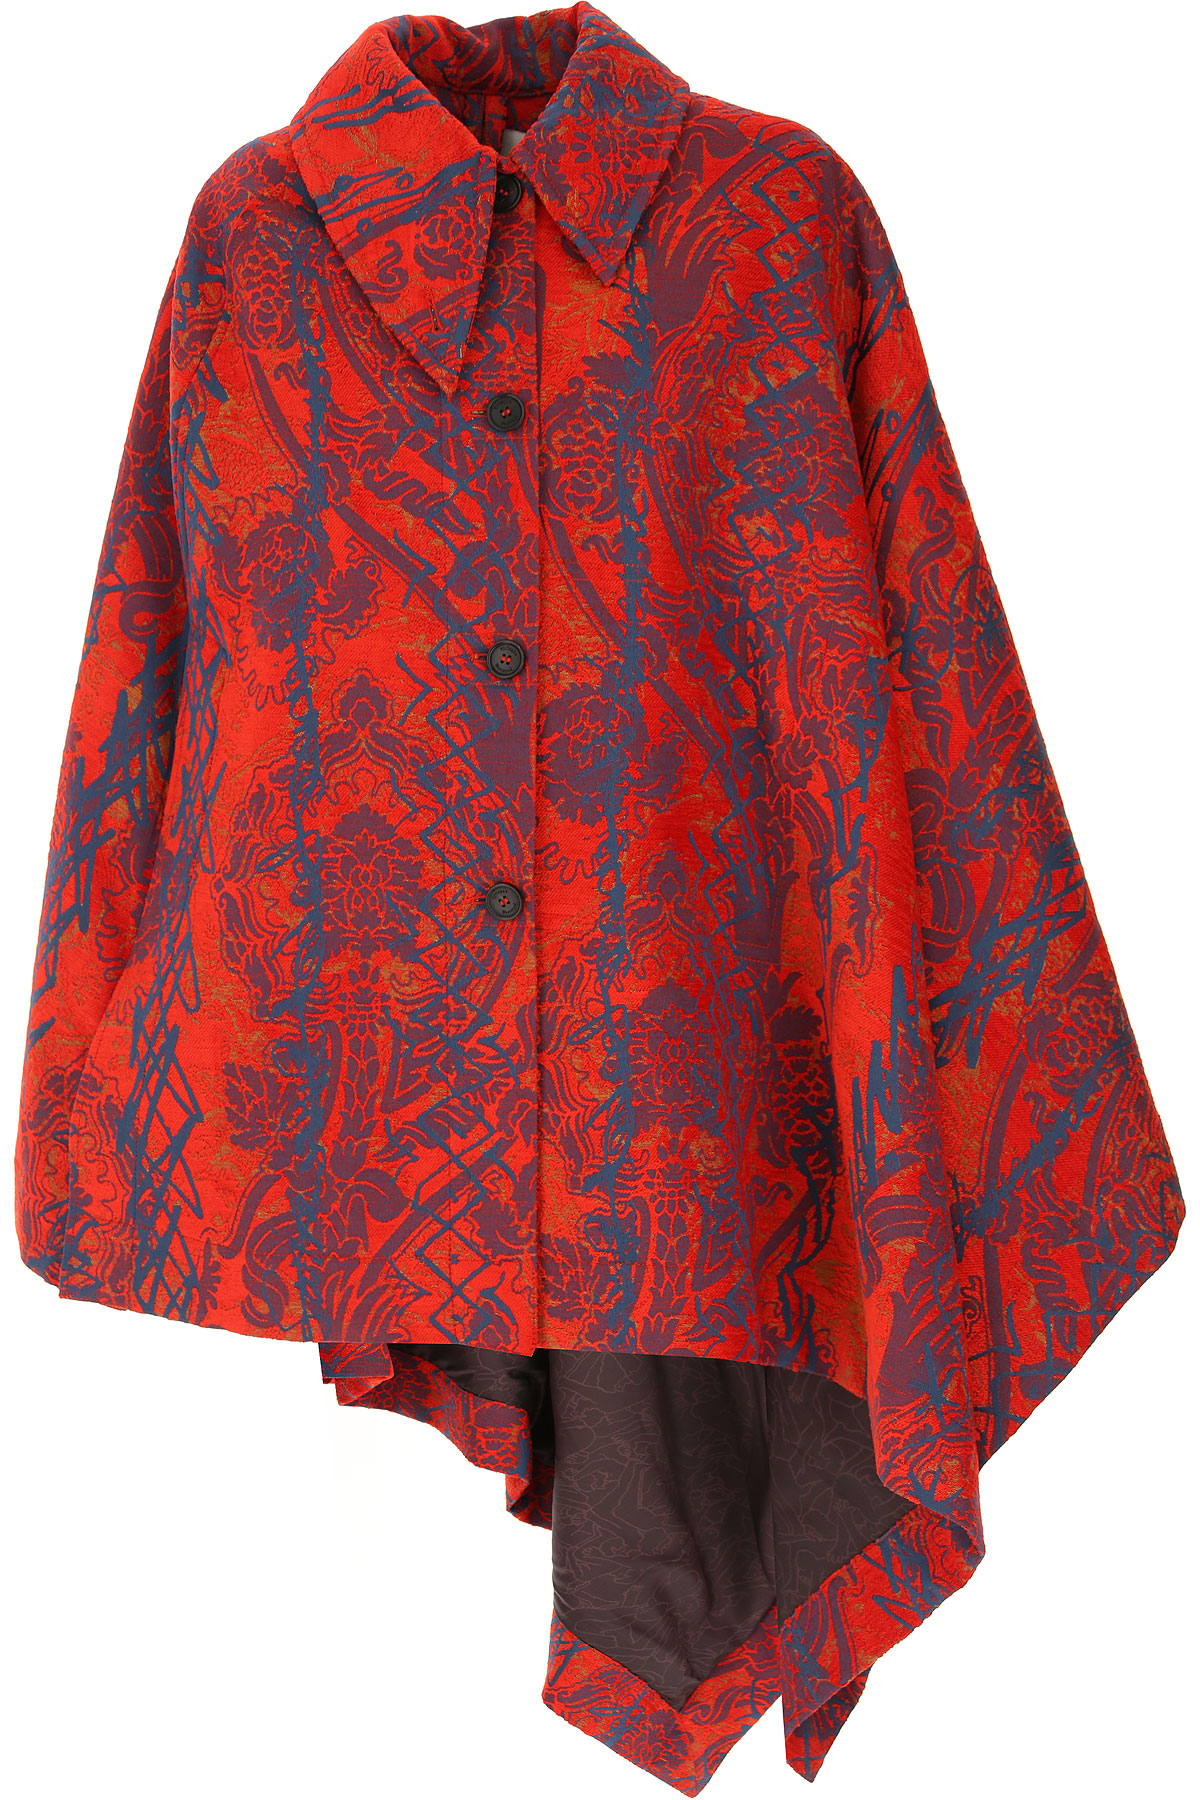 Vivienne Westwood Jacke für Damen Günstig im Sale, Rot, Polyester, 2017, 40 44